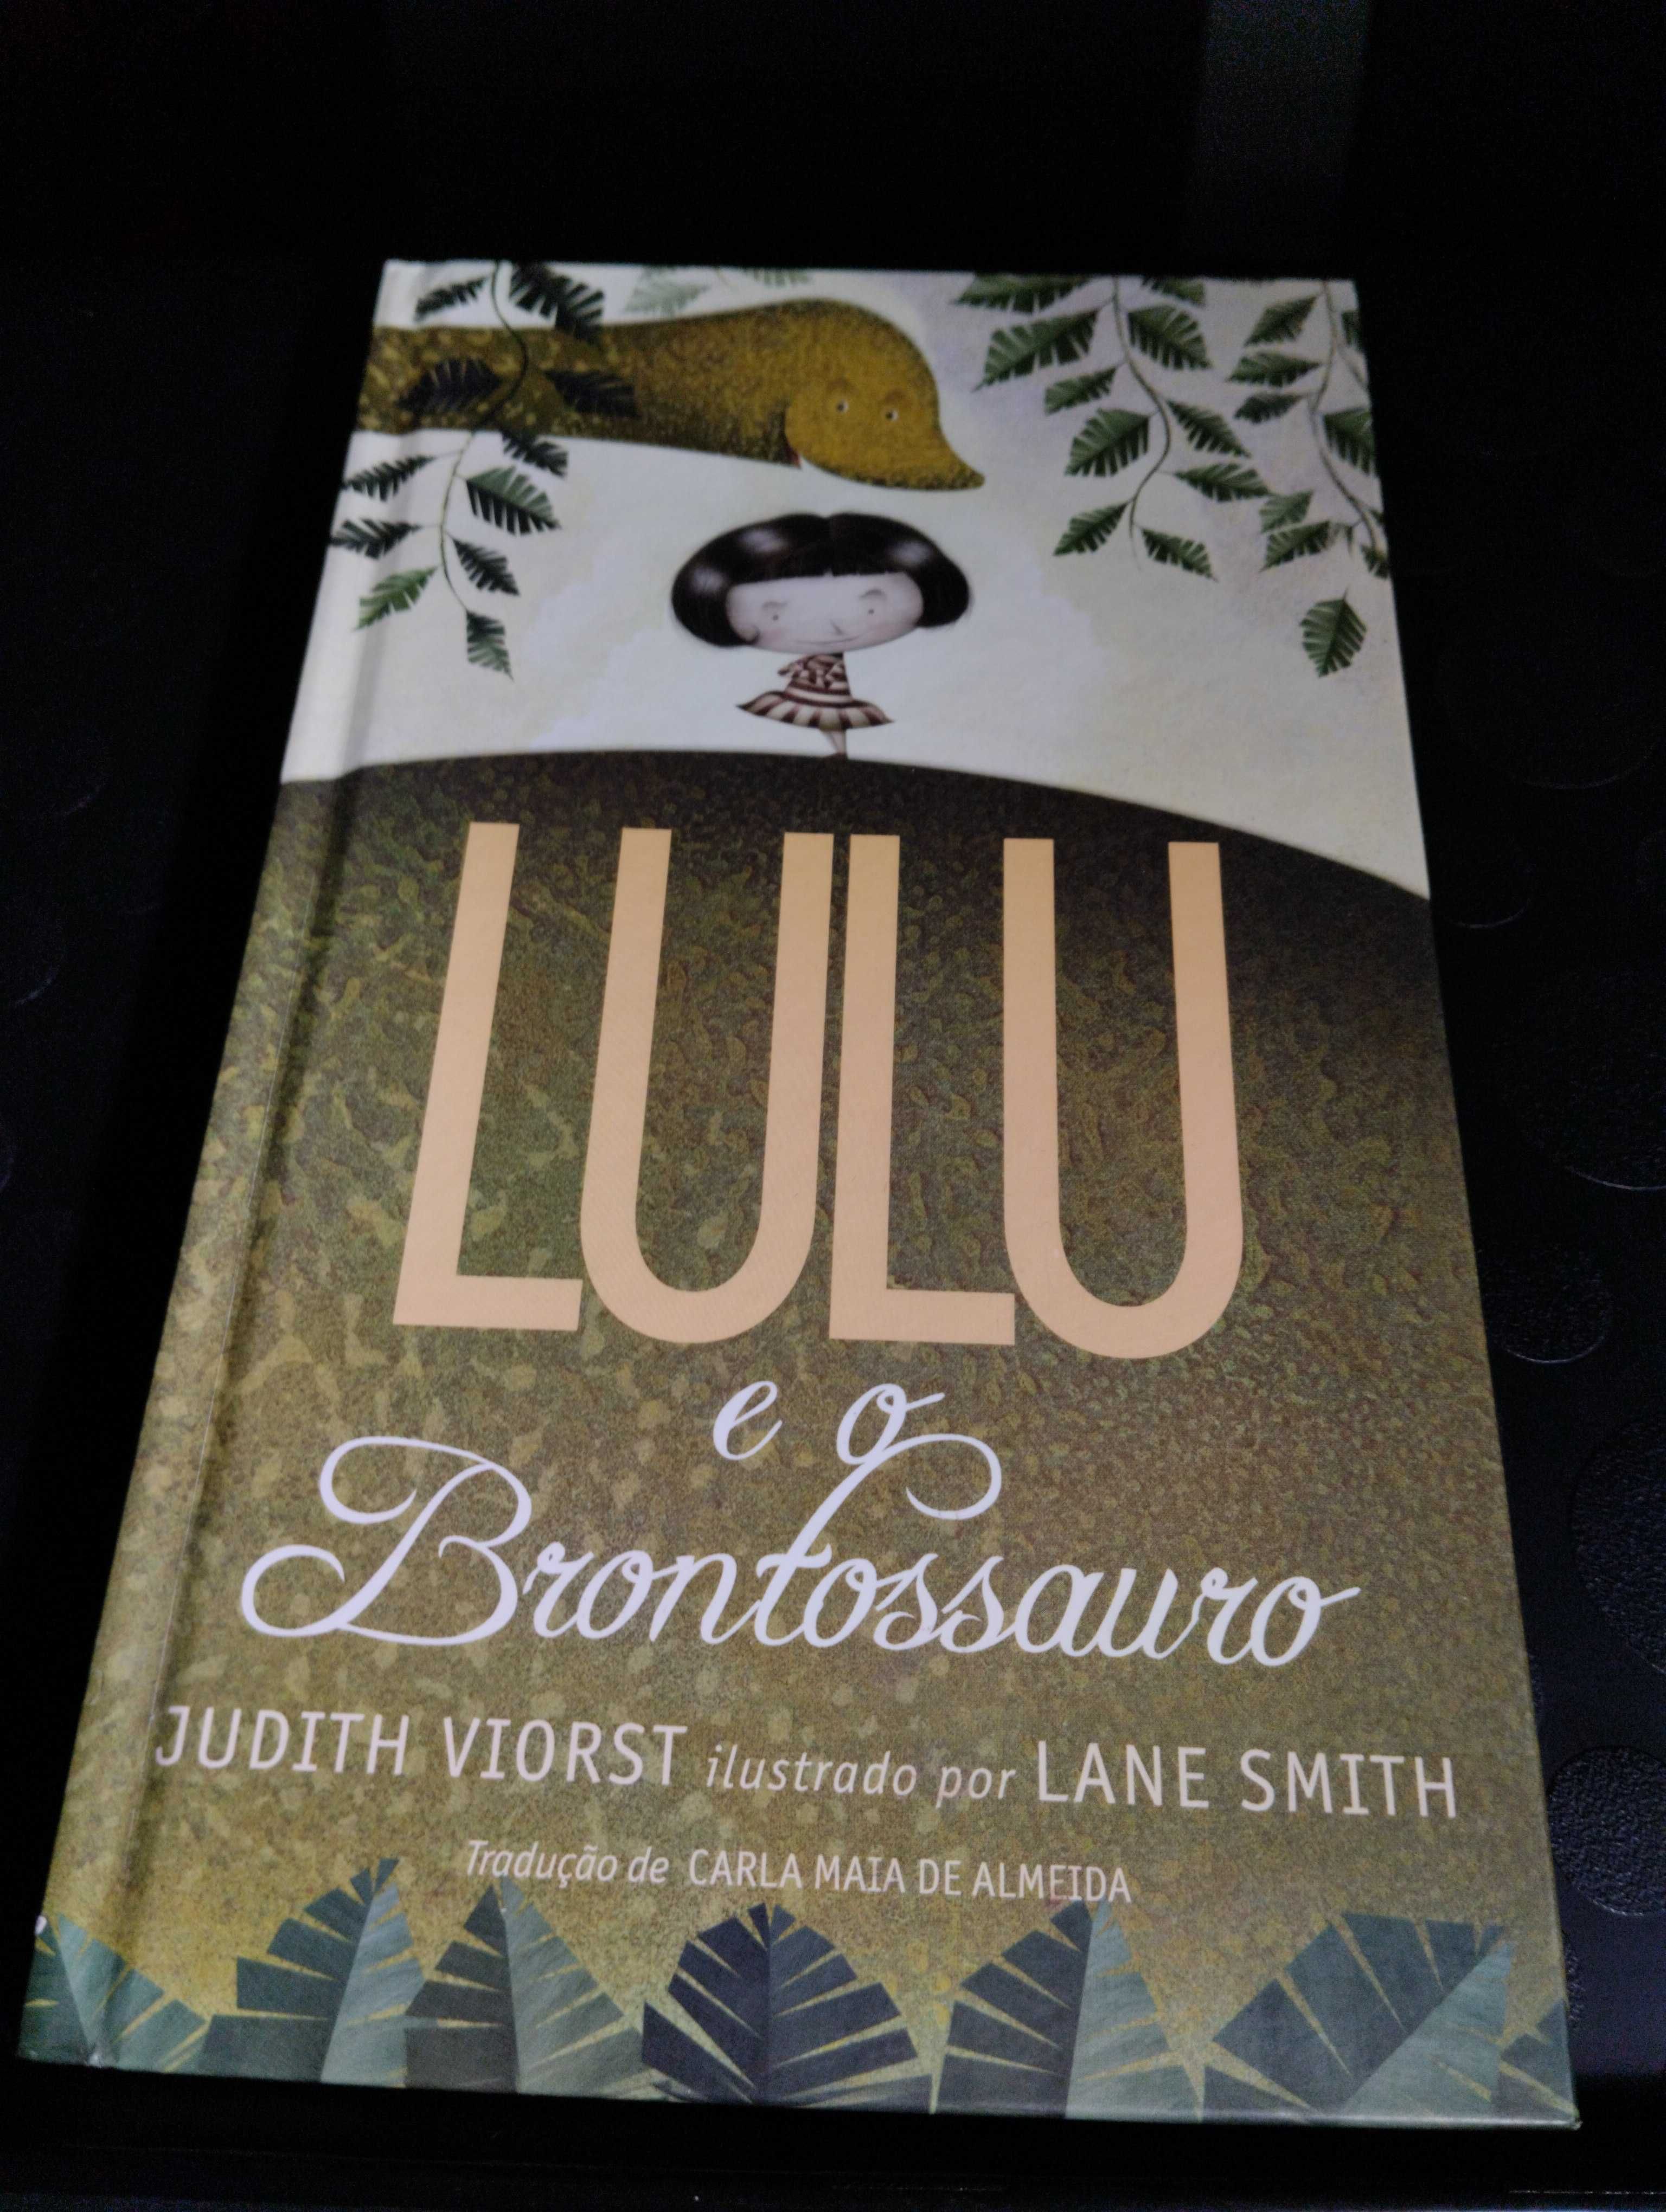 LULU e o Brontossauro